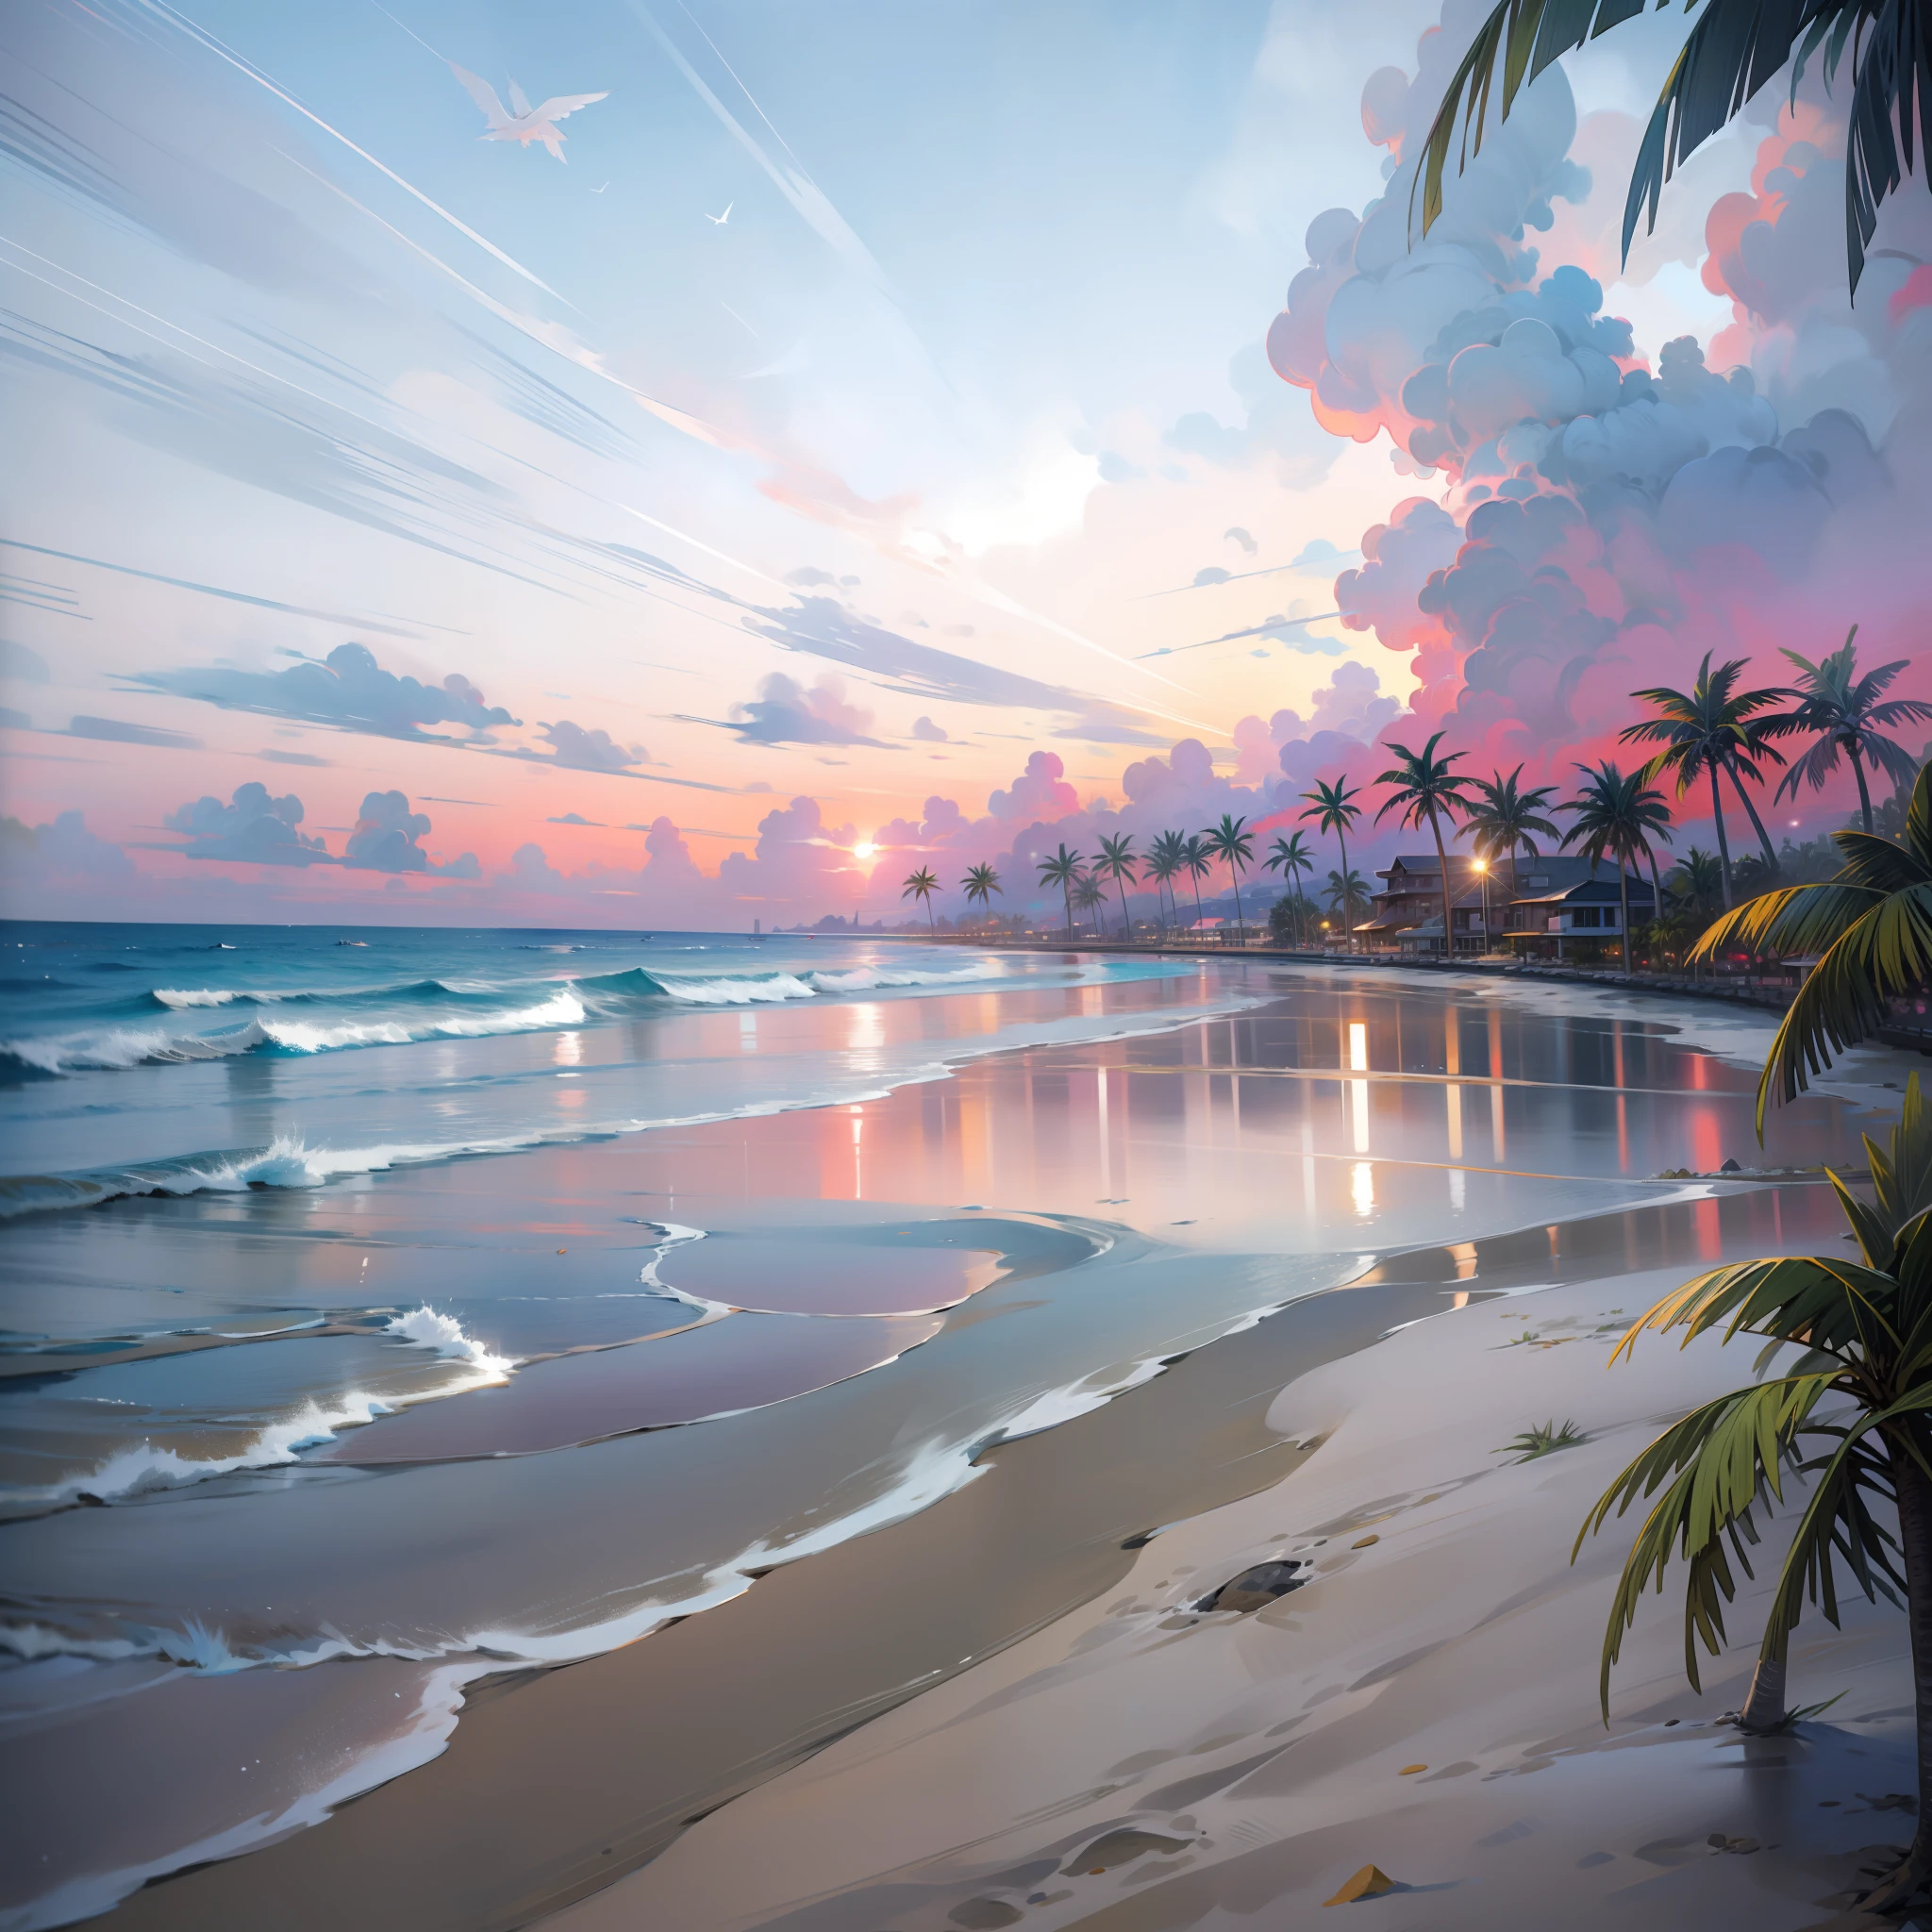 un coucher de soleil absolument fascinant sur la plage avec un mélange d&#39;orange, rose et jaune dans le ciel. L&#39;eau est limpide, embrassant doucement le rivage, et la plage de sable blanc s&#39;étend à perte de vue. La scène est dynamique et époustouflante, avec des mouettes planant haut dans le ciel et des palmiers se balançant doucement. Imprégnez-vous de l&#39;atmosphère calme et laissez la tranquillité vous envelopper.